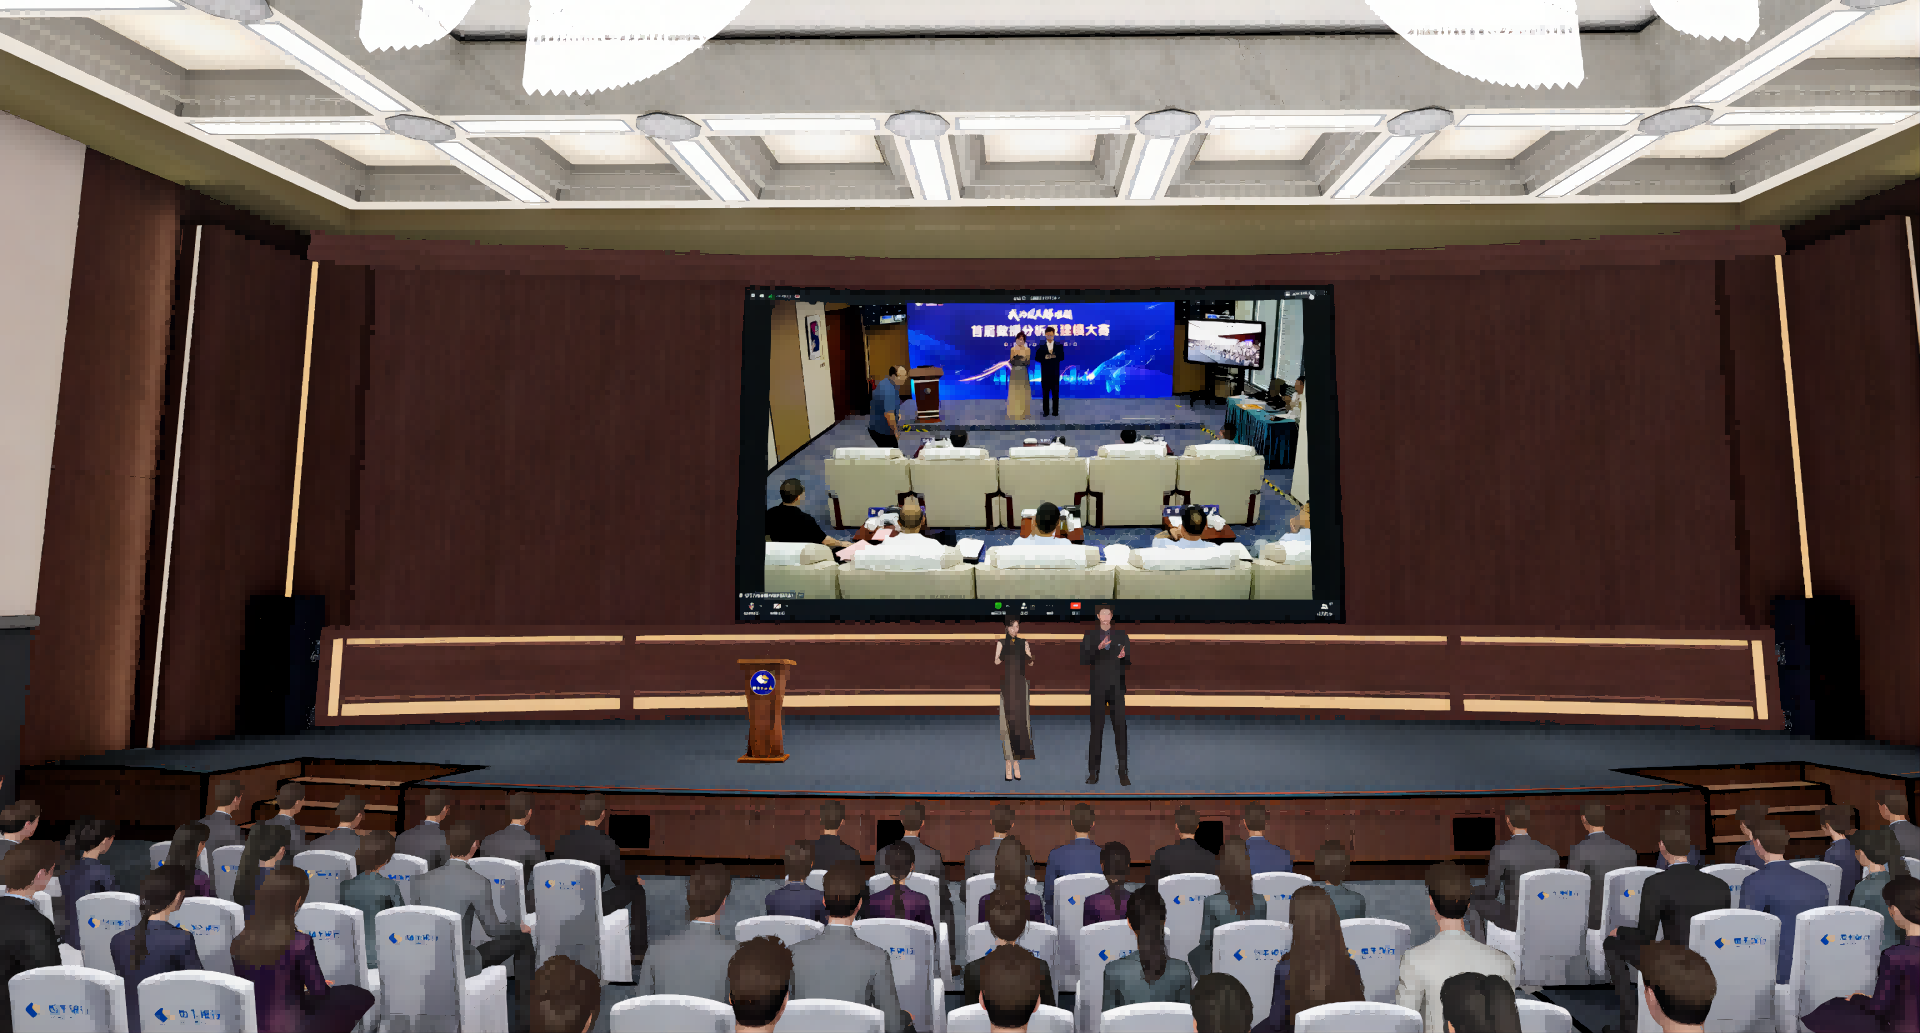 图片展示了一个会议室内景，前方有发言台和大屏幕，屏幕显示正在发言的人，听众坐在会场内聆听。